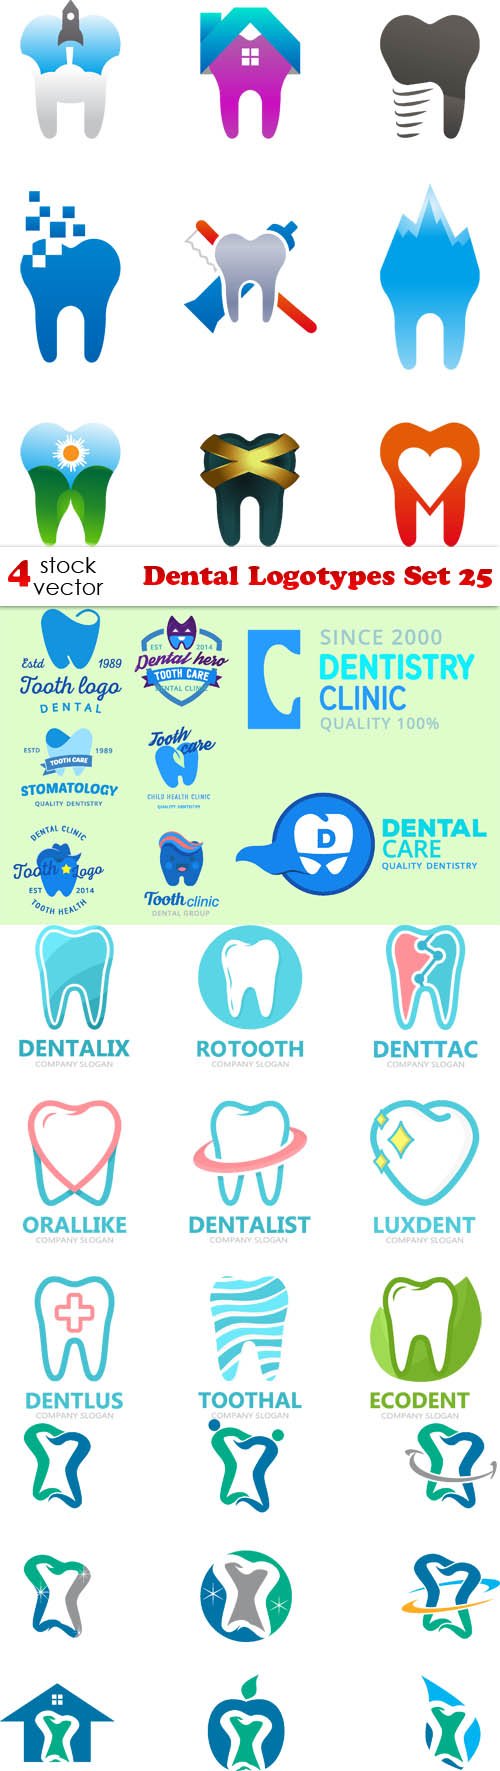 Vectors - Dental Logotypes Set 25